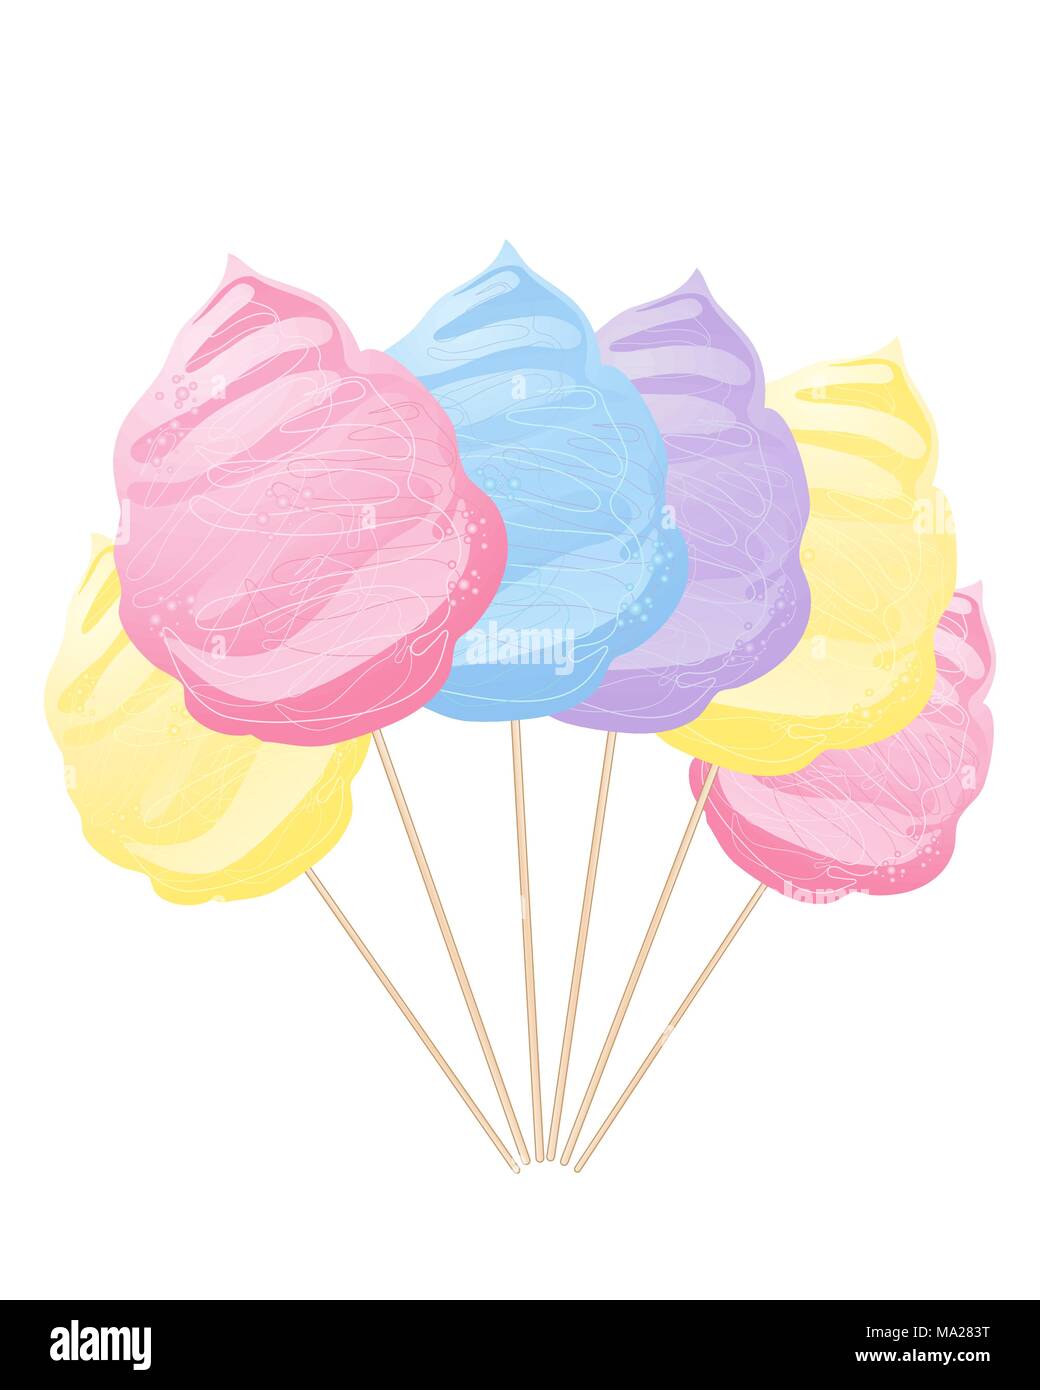 Un vecteur abstract illustration en format eps 10 d'une rangée de couleurs bleu jaune et rose coton violet candy sur bois isolé sur fond blanc Illustration de Vecteur